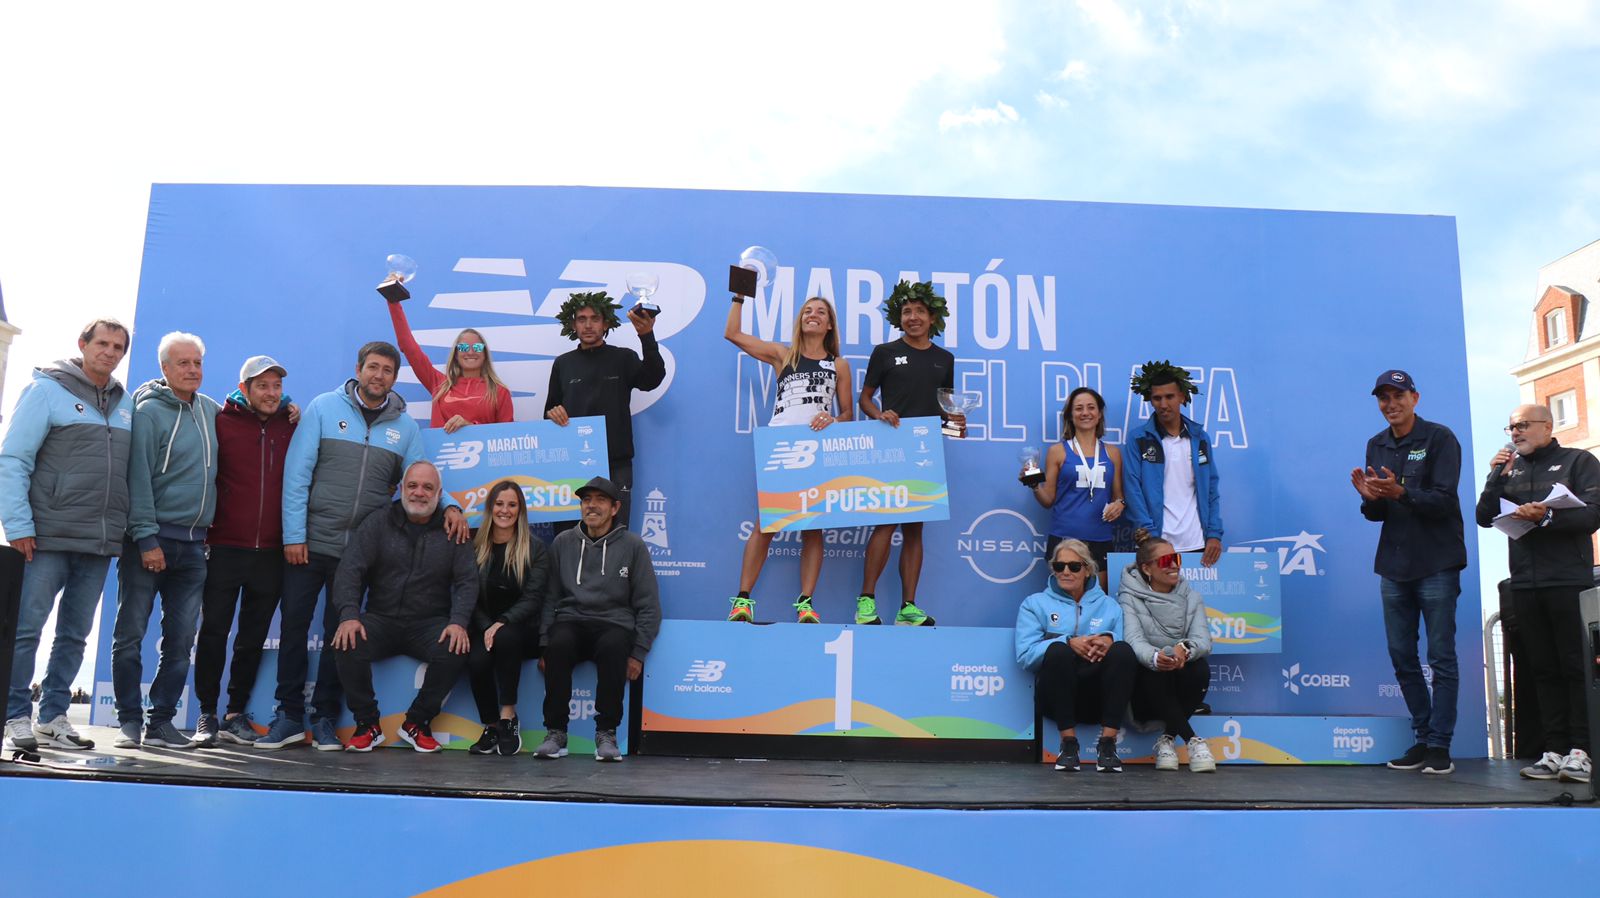 La Maratón de Mar del Plata tuvo destacadas actuaciones de los atletas marplatenses